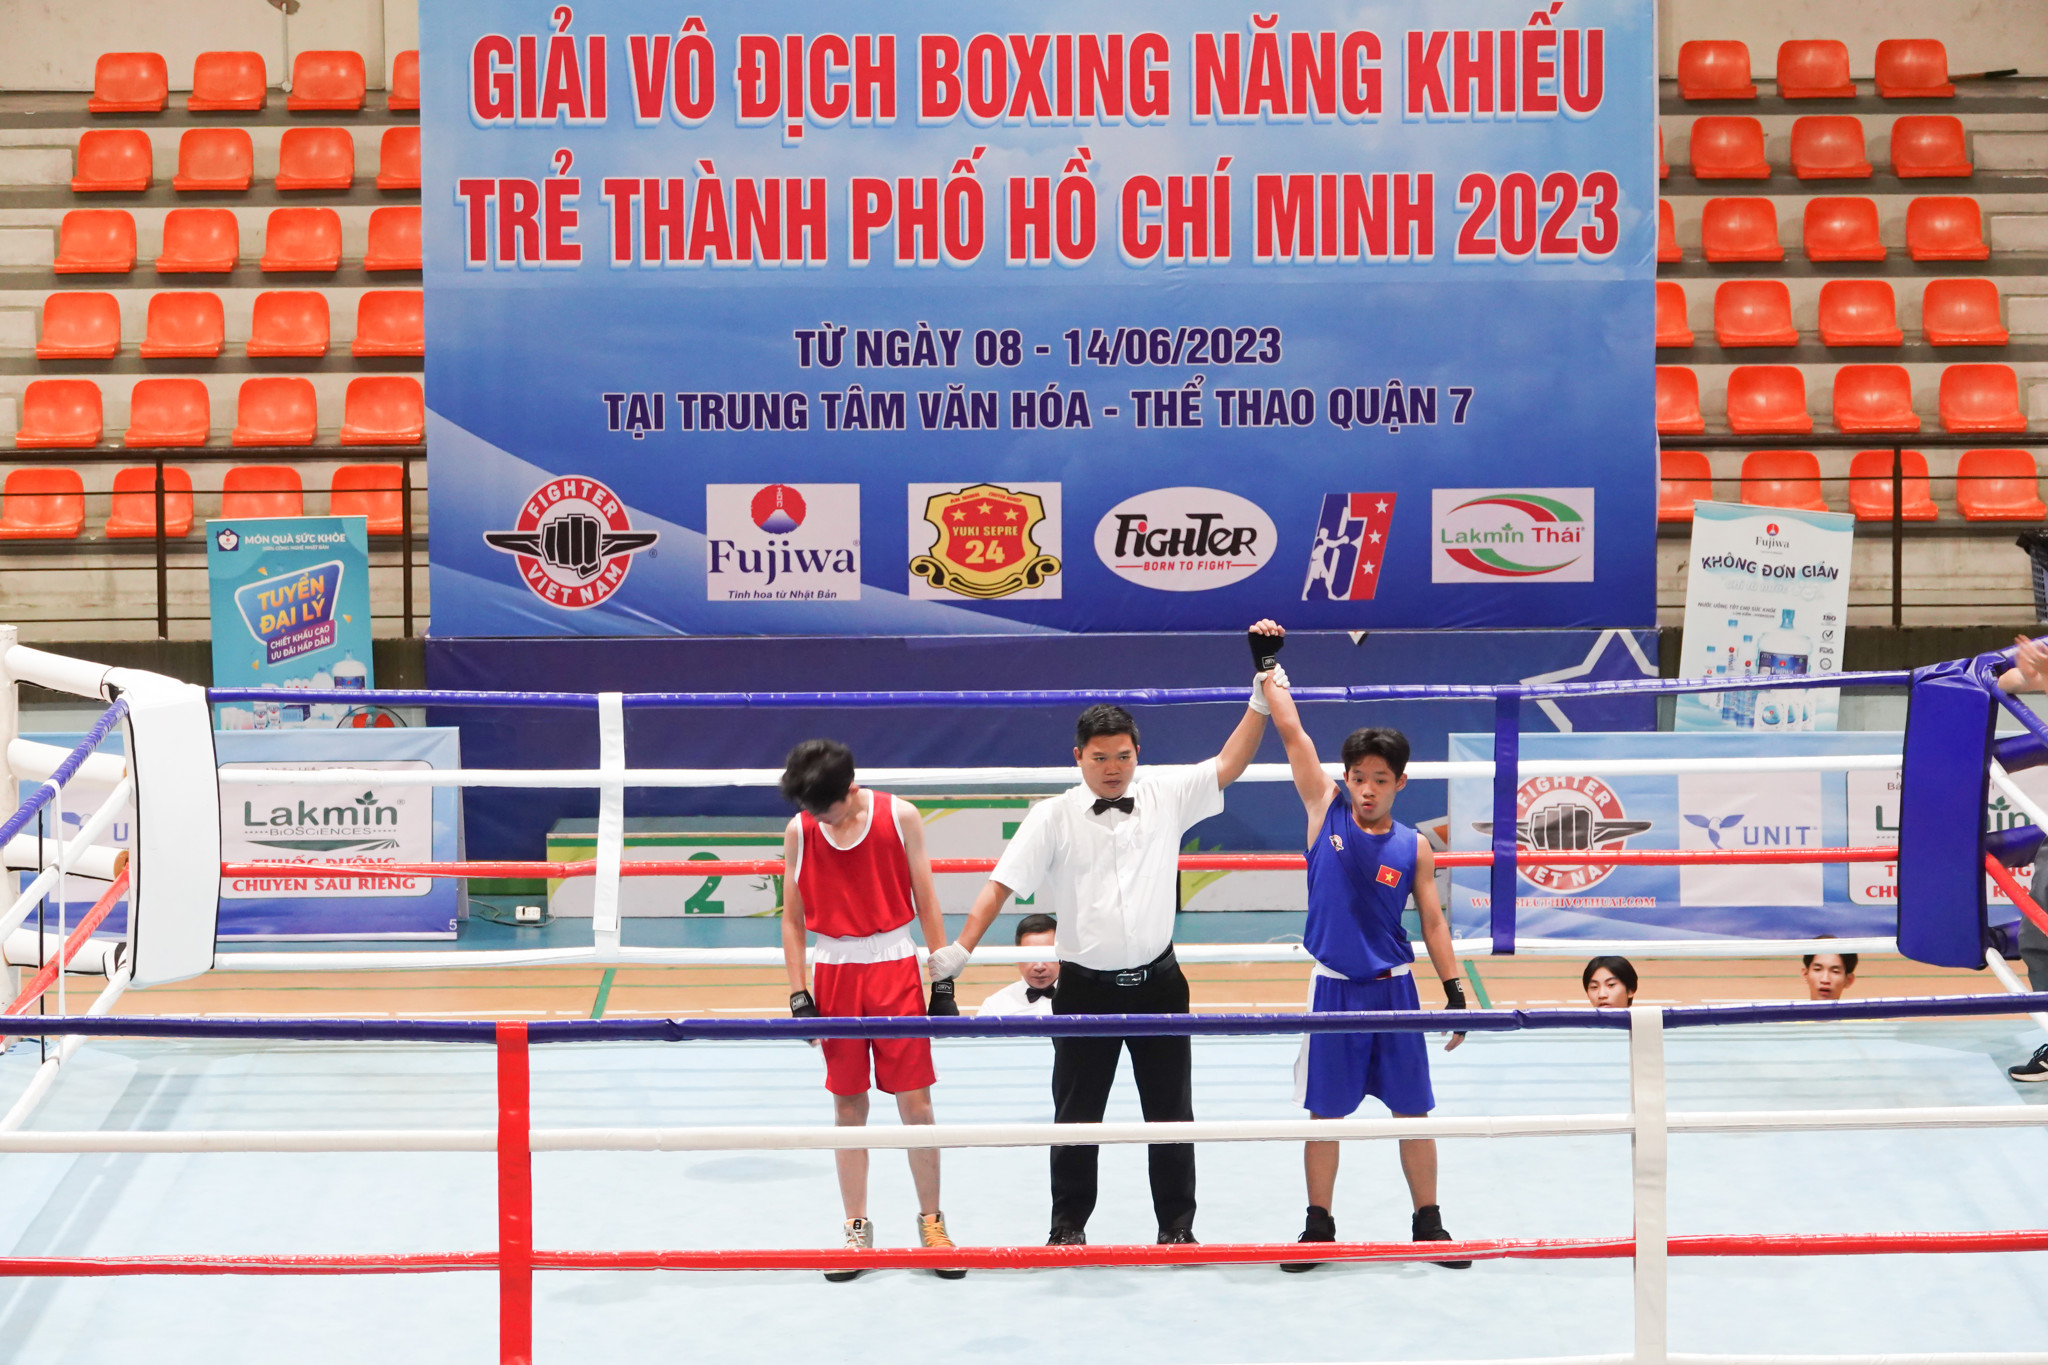 Trương Đình Vàng vs Đinh Gia Minh - Giải VĐ Boxing Trẻ TP.HCM 2023